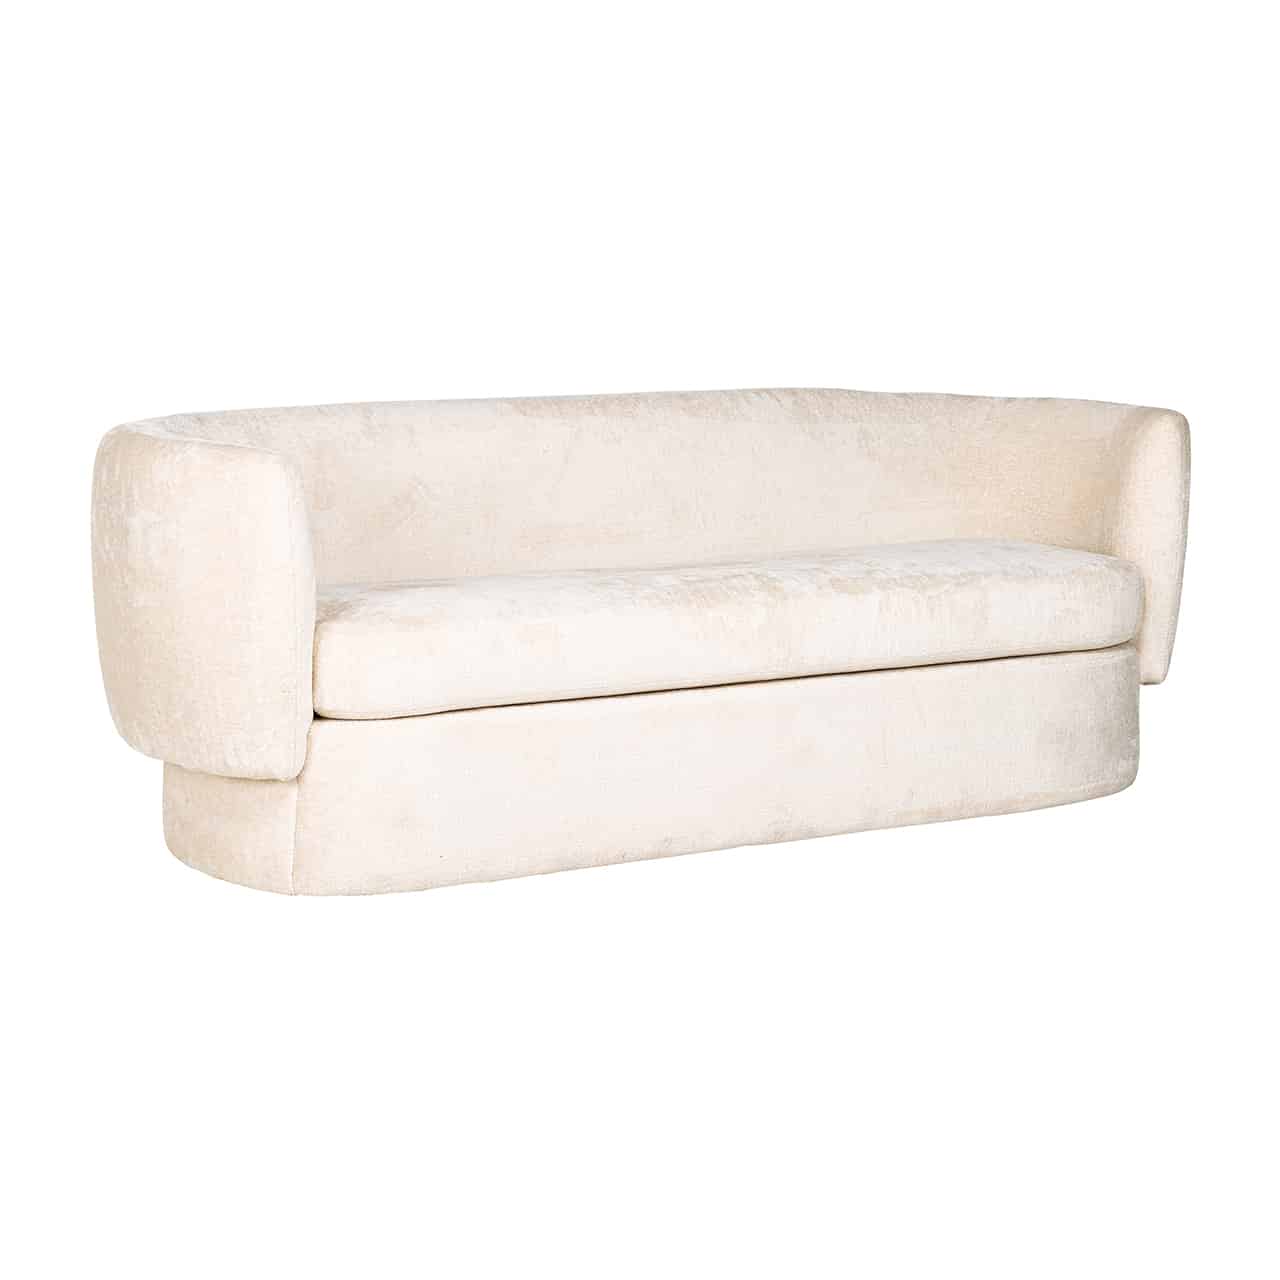 Modernes, weißes Sofa; auf einem langen, ovalen Sockel ein dickes, durchlaufendes Sitzpolster, umgeben von einer runden, umlaufenden Lehne. 